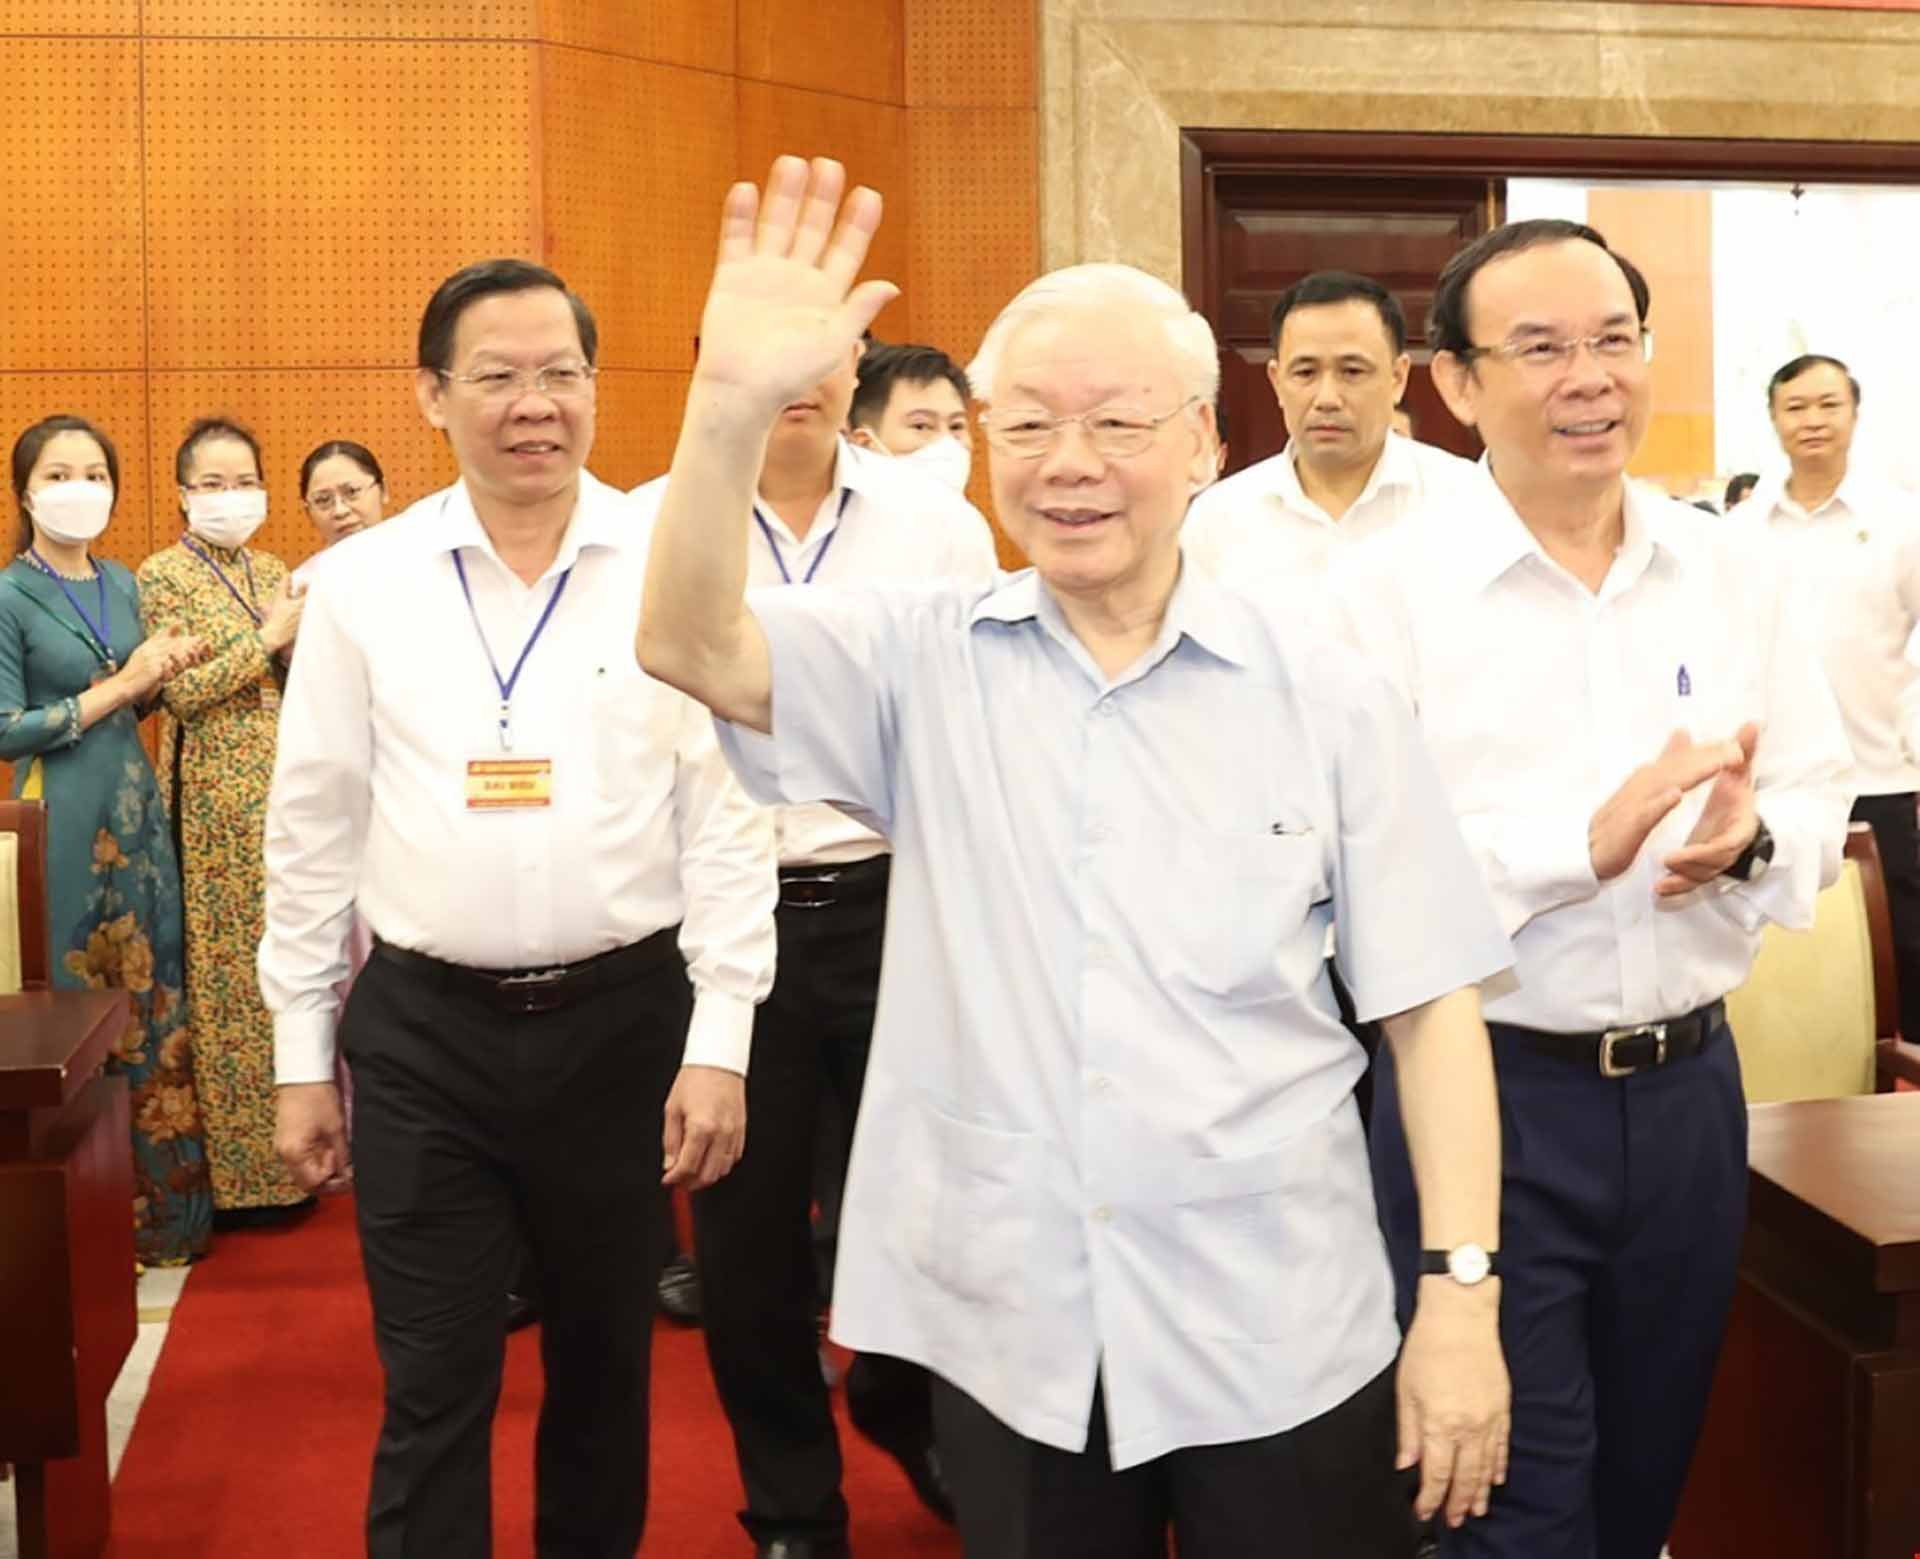 TP.HCM phát huy hơn nữa vai trò đầu tàu vùng Đông Nam Bộ  | Chính trị | Vietnam+ (VietnamPlus)